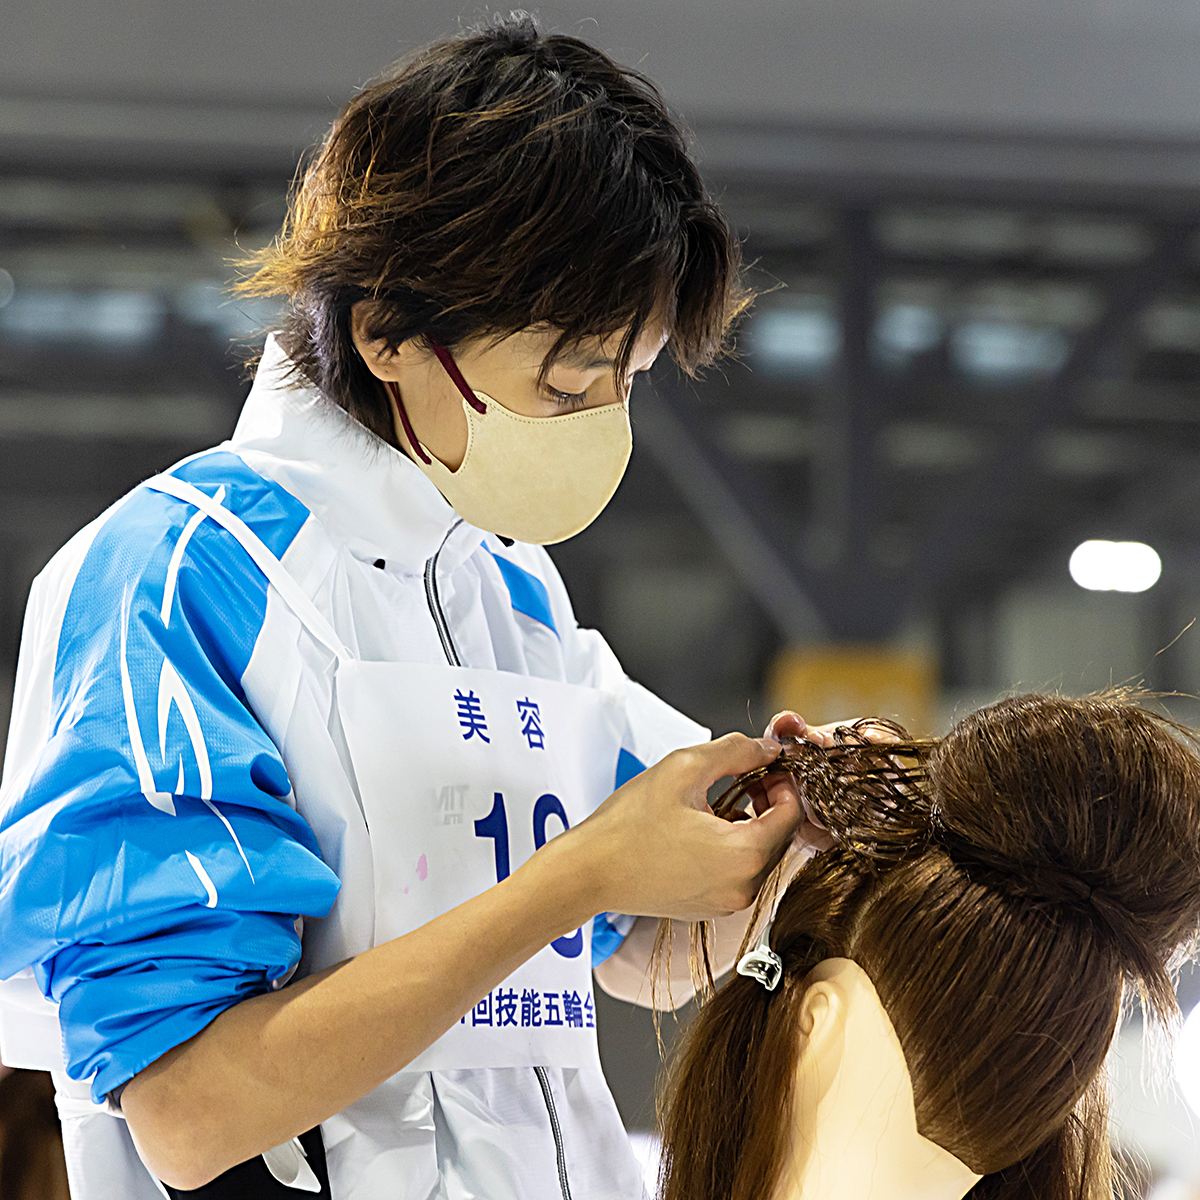 技能五輪全国大会「美容」職種！ ポイント③ 多様な技術を一つひとつ確実にこなしていくことで、スピーディーな動作を実現することができます #WorldSkills #WorldSkillsJapan #技能五輪全国大会 #NationalSkills #美容 #Hairdressing